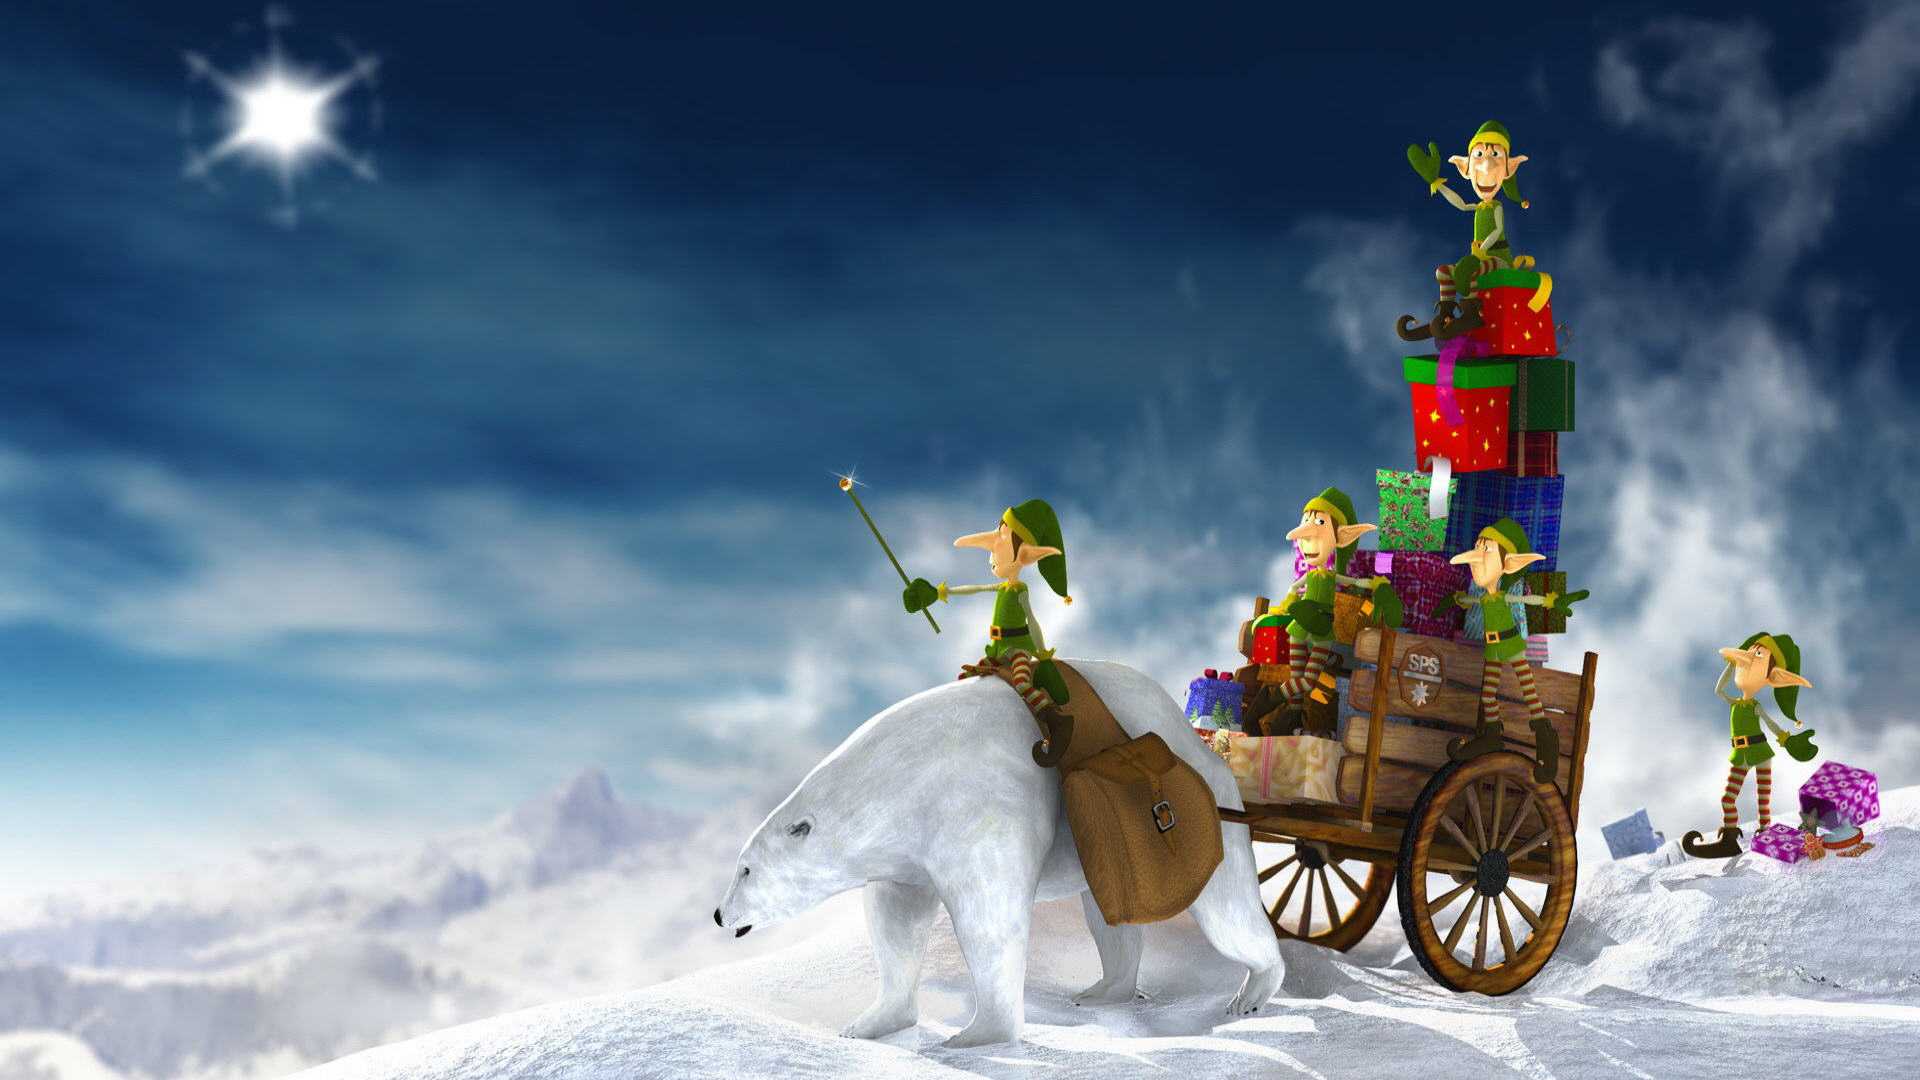 Funny Christmas Winter Wallpaper For Desktop